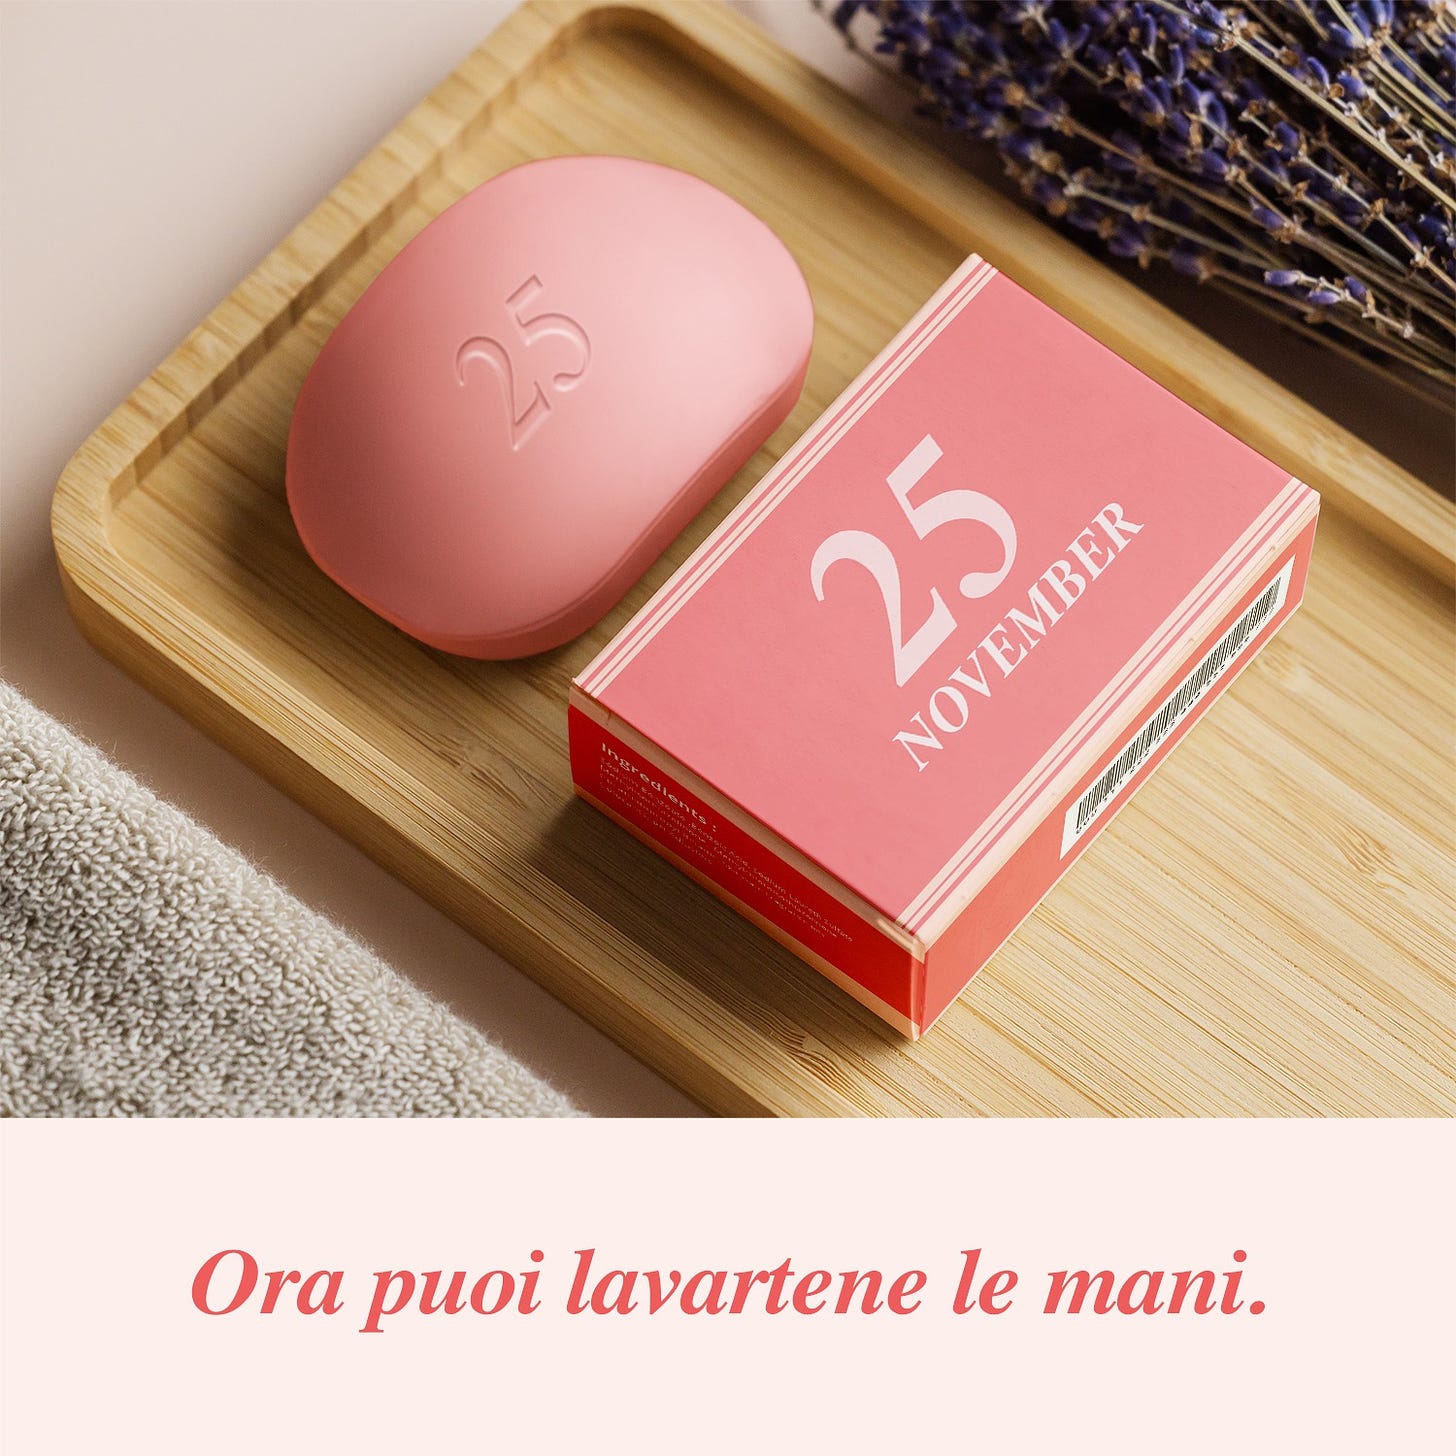 Nell'immagine si vede una saponetta rosa con la scritta "25 novembre" "Ora puoi lavartene le mani"